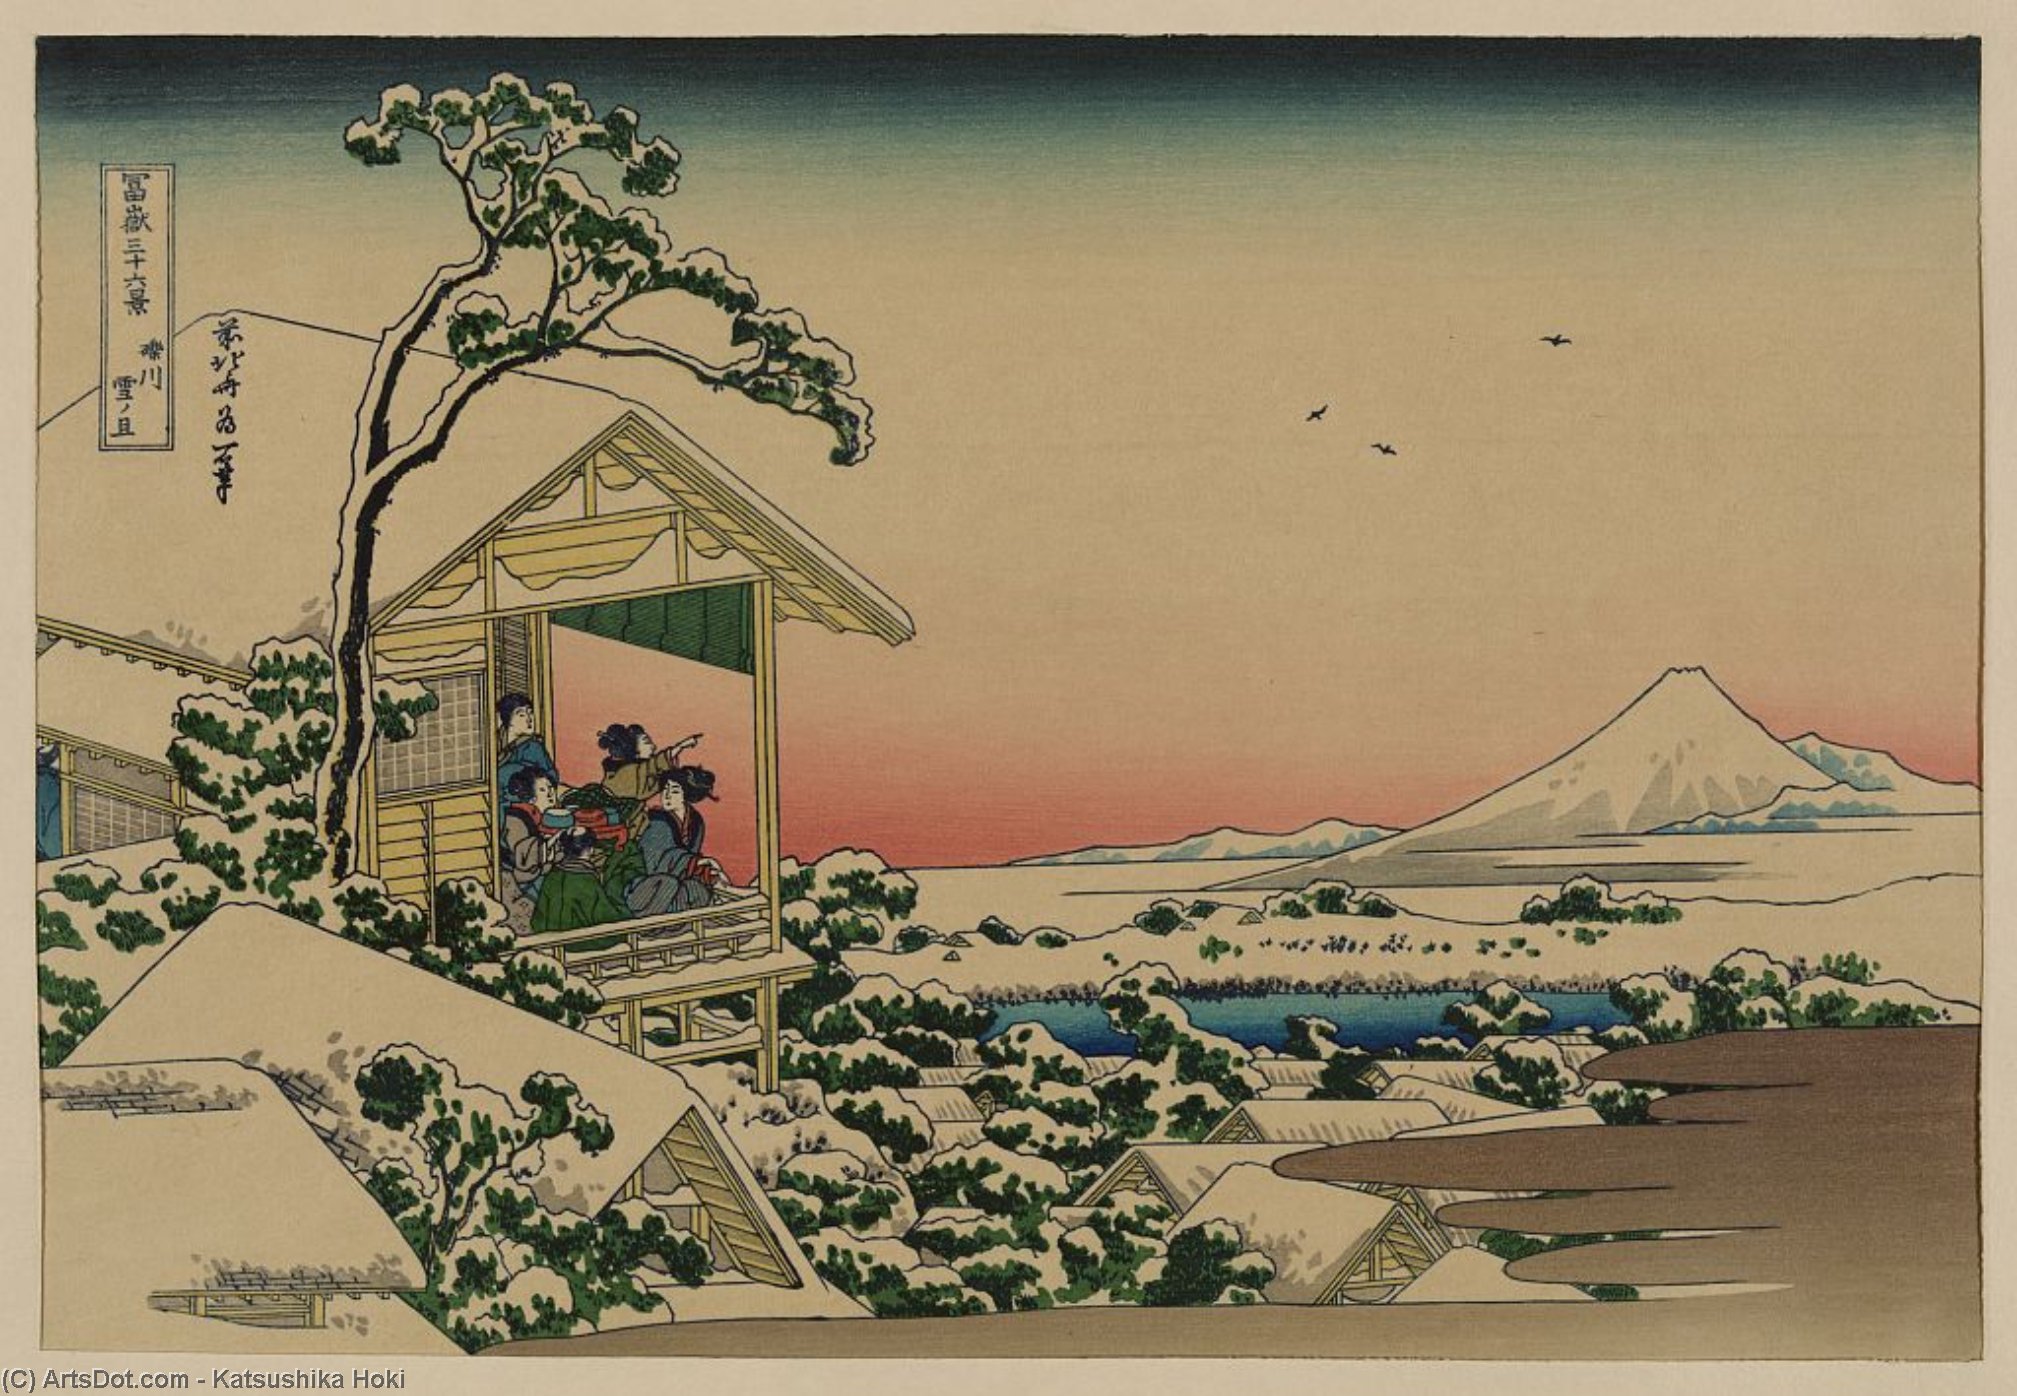 Order Oil Painting Replica Teahouse At Koishikawa The Morning After A Snowfall by Katsushika Hokusai (1760-1849, Japan) | ArtsDot.com